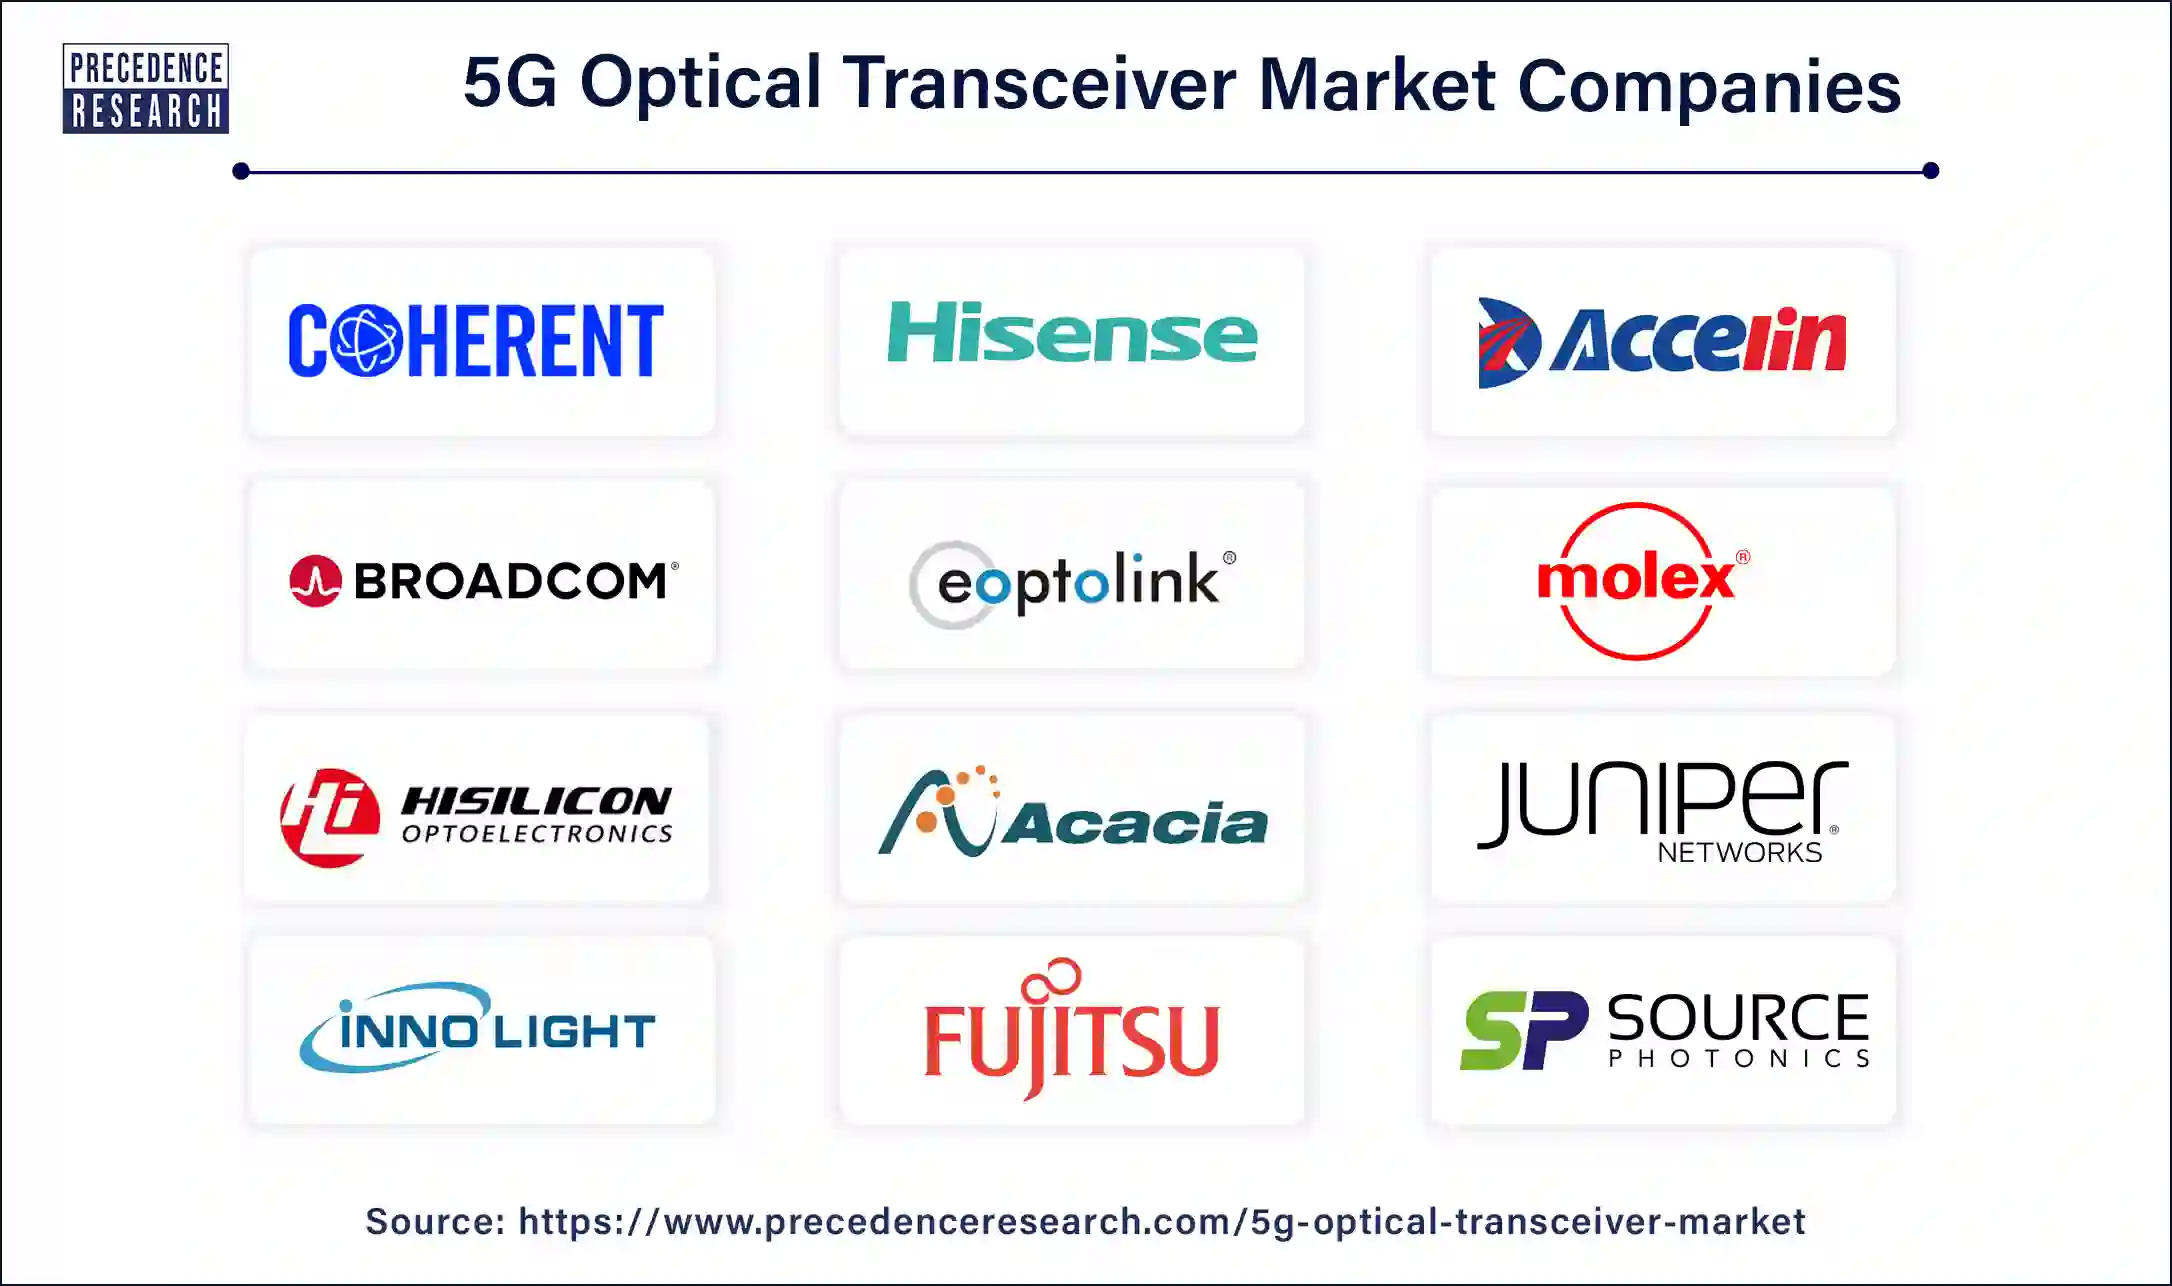 5G Optical Transceiver Companies